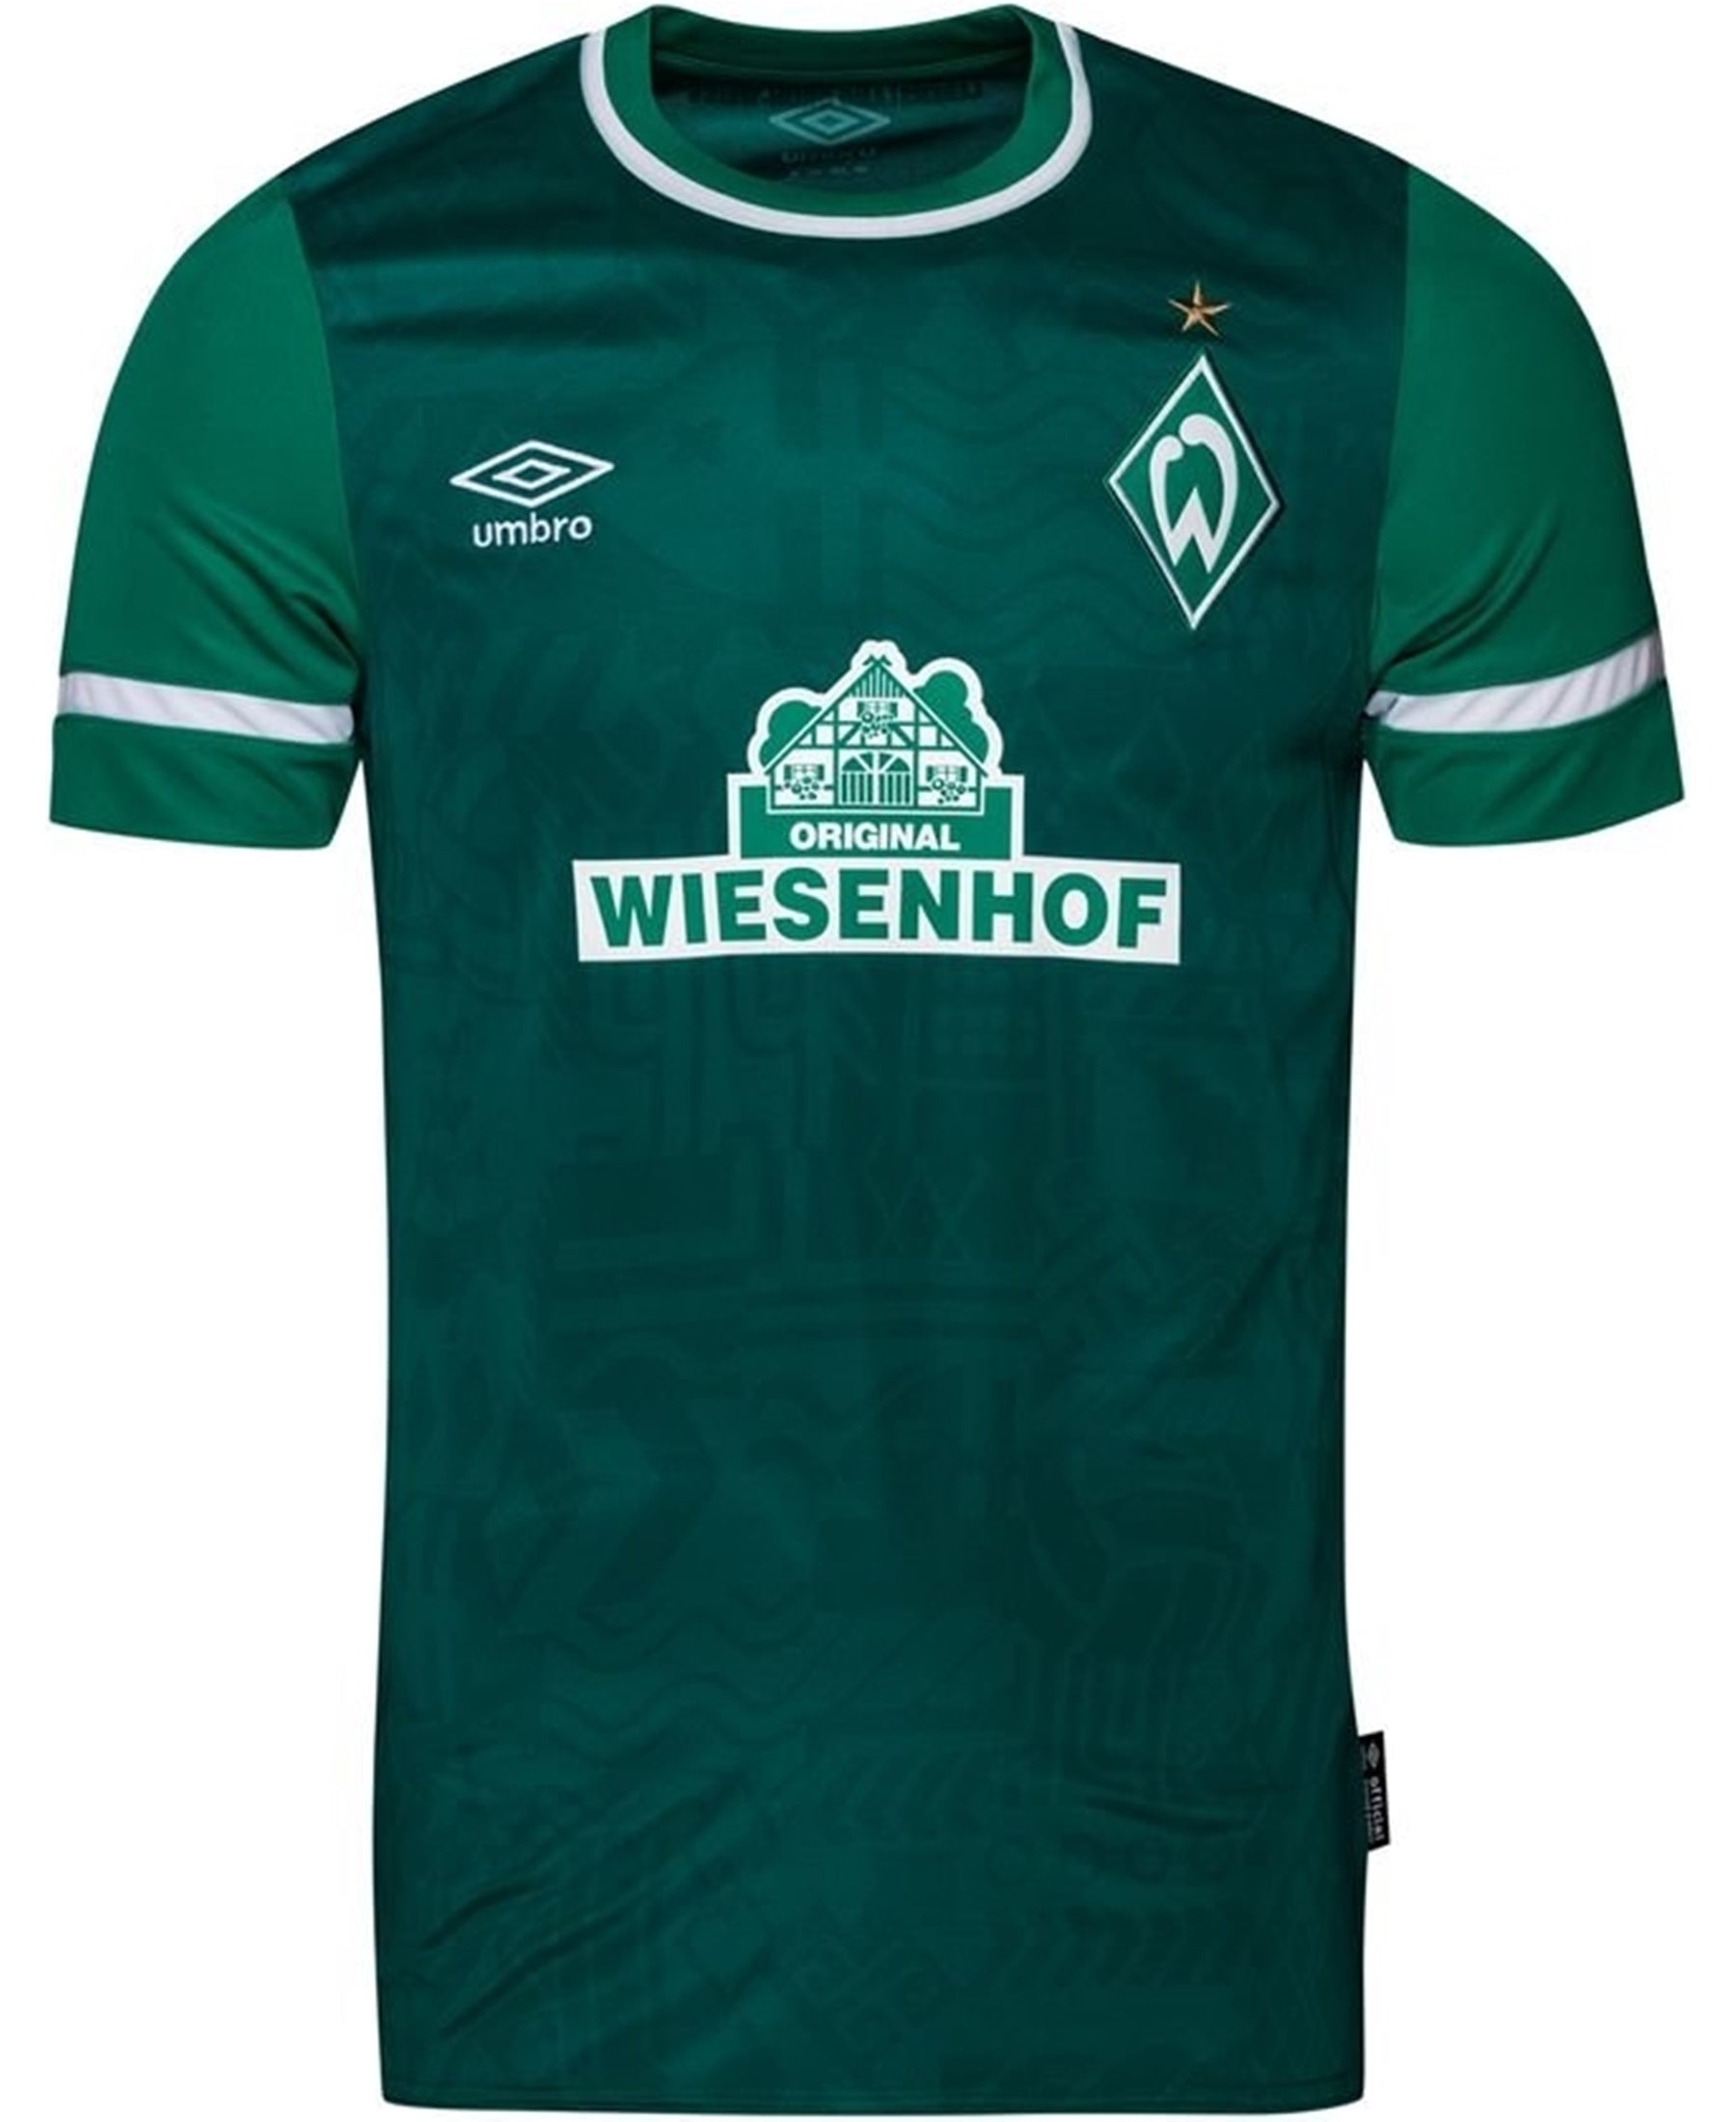 Das Umbro SV Werder Bremen Heimtrikot 2021-2022 (94519U-KIT) ist ein Must-Have für alle Werder-Fans. In den traditionellen grün-weißen Farben des Vereins zeigt es stolz das Werder Bremen Logo. Mit hoher Qualität und modernem Design ist es perfekt für Spiel und Alltag. Jetzt bei SHOP4TEAMSPORT bestellen!